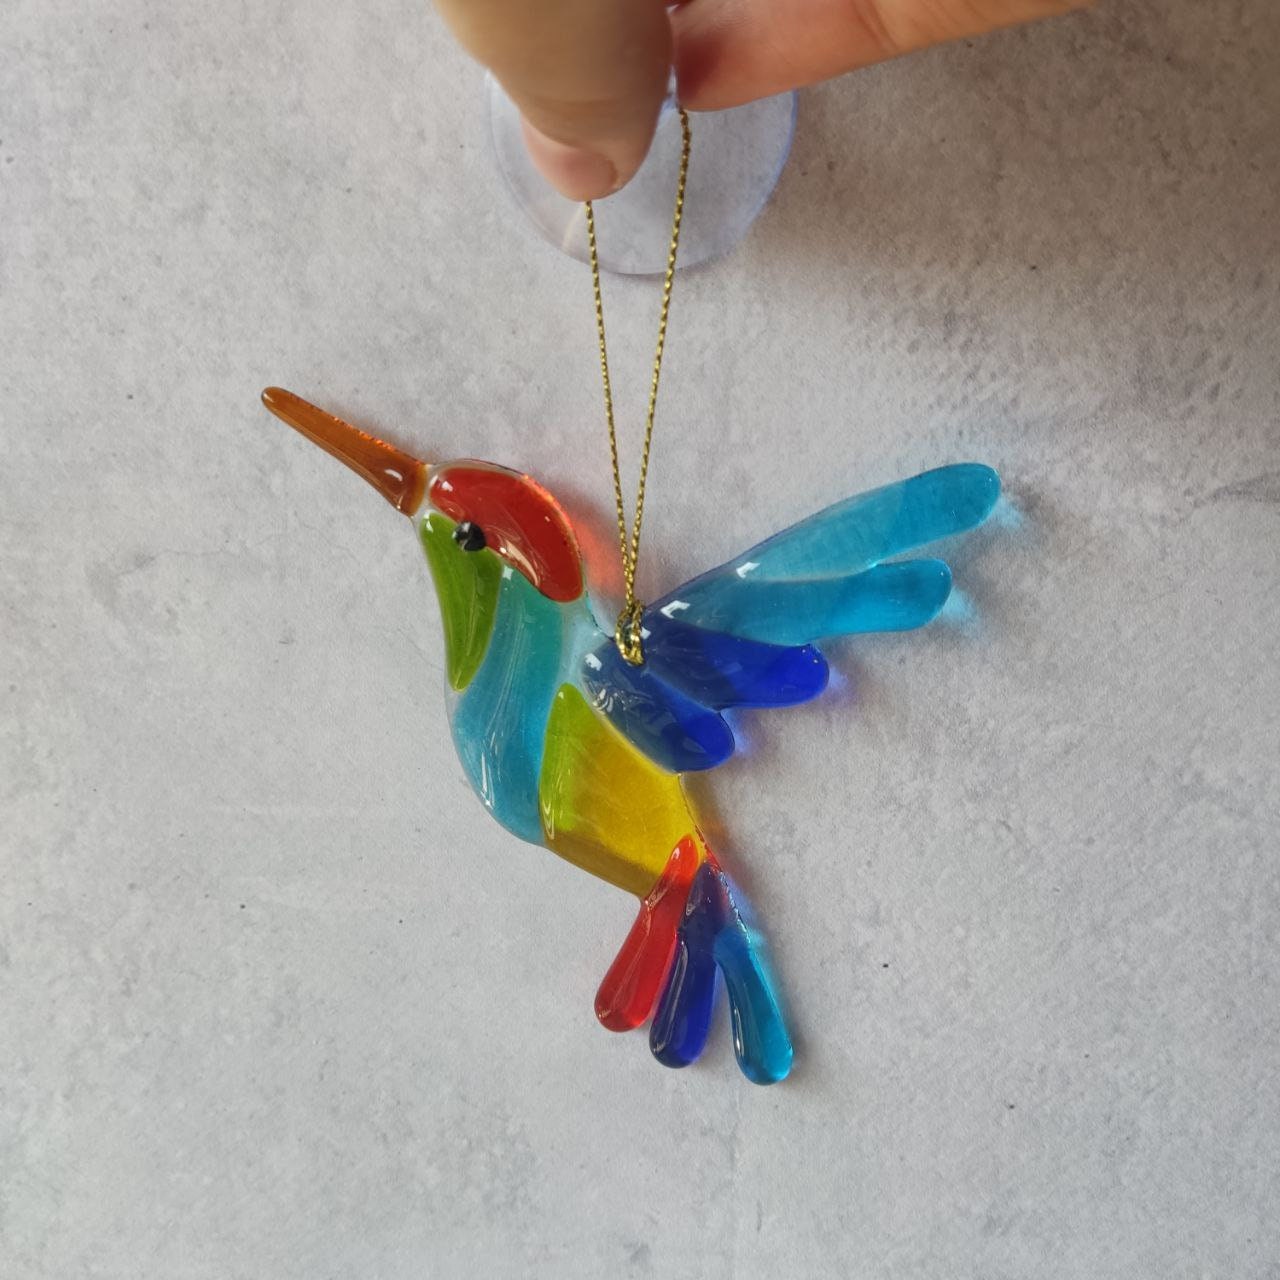 Attrape-soleil en verre fusionné colibri, attrape-soleil oiseau